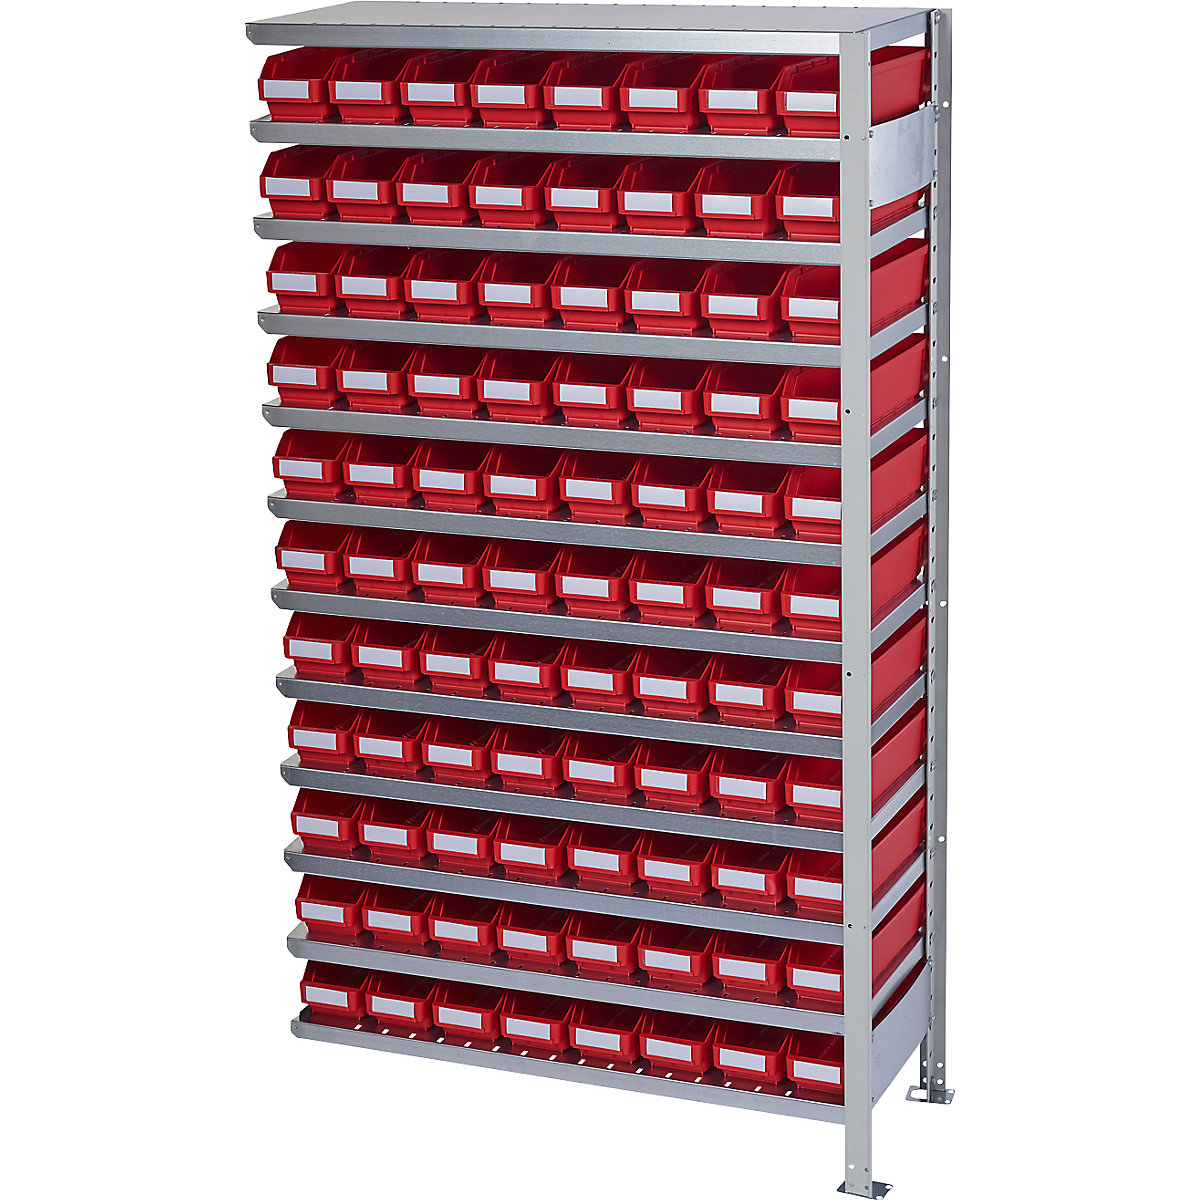 Összedugaszolós állvány dobozokkal – STEMO, állványmagasság 1790 mm, bővítő állvány, 400 mm mély, 88 piros doboz-33